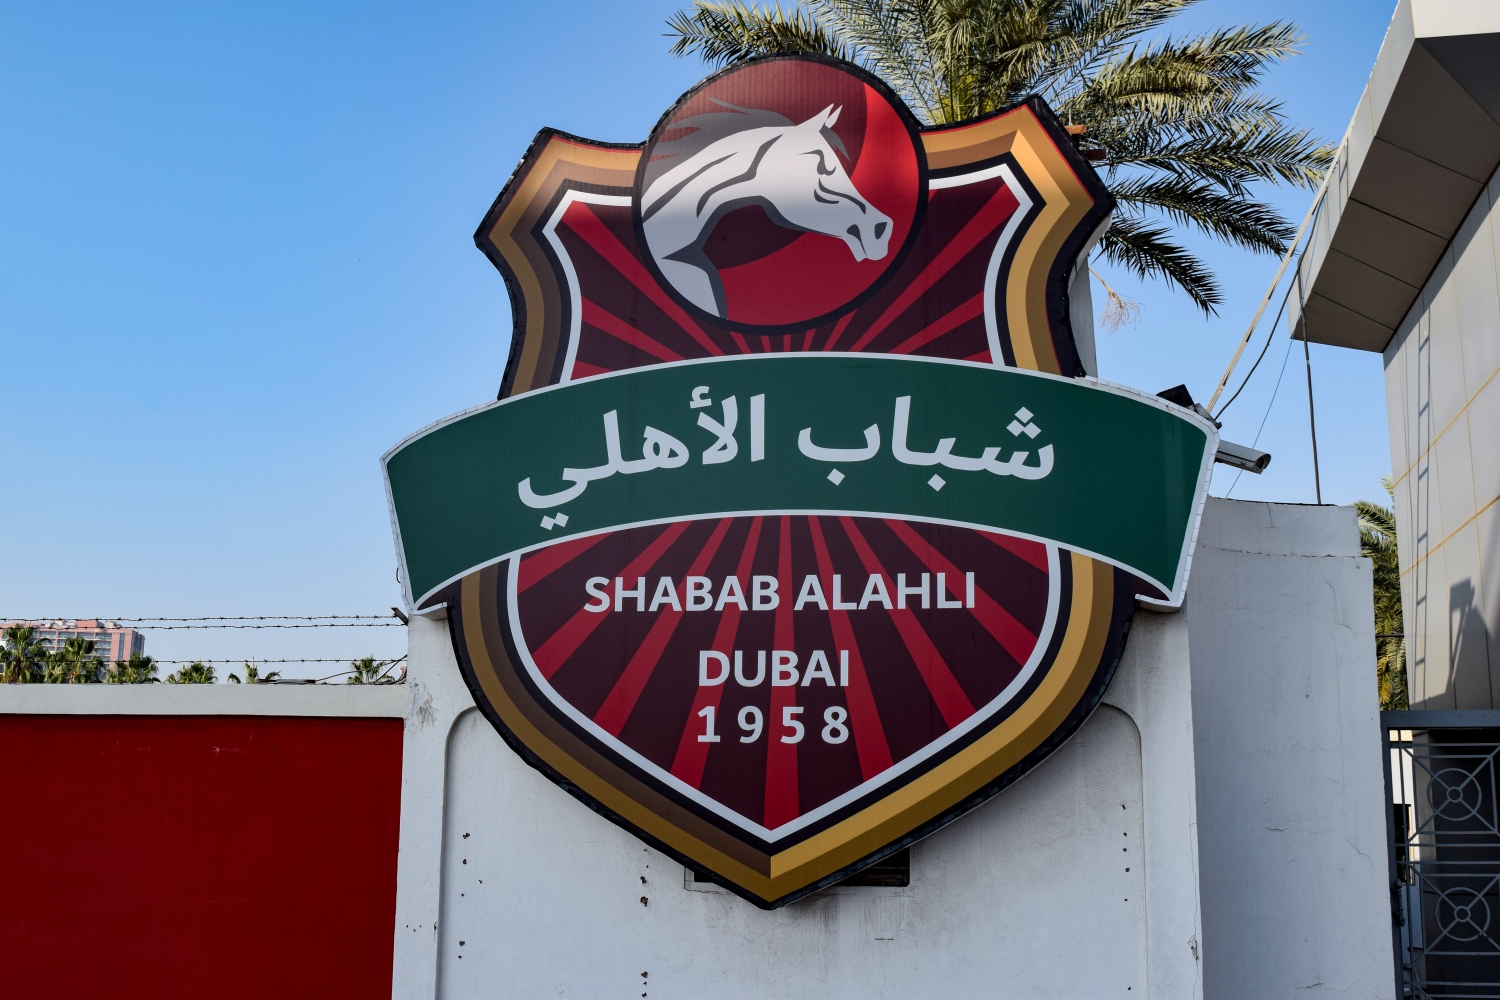 Το γήπεδο της Σαμπάμπ Αλ Αχλί